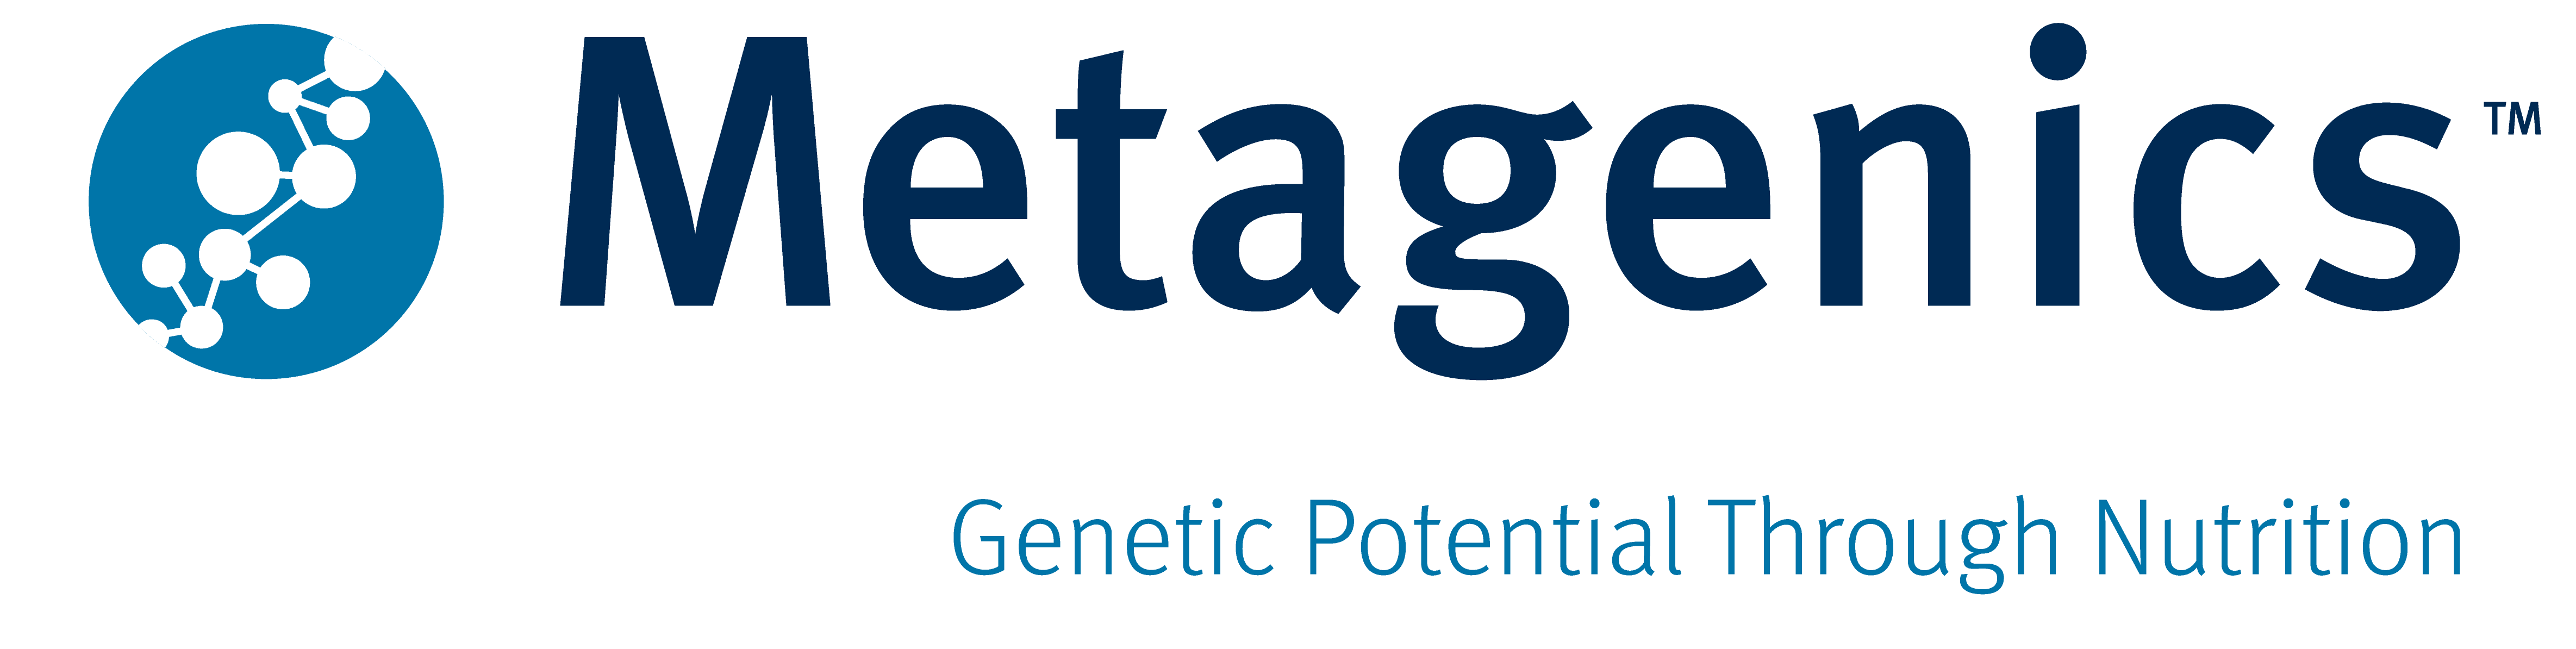 Metagenics Logo New CMYK tagline